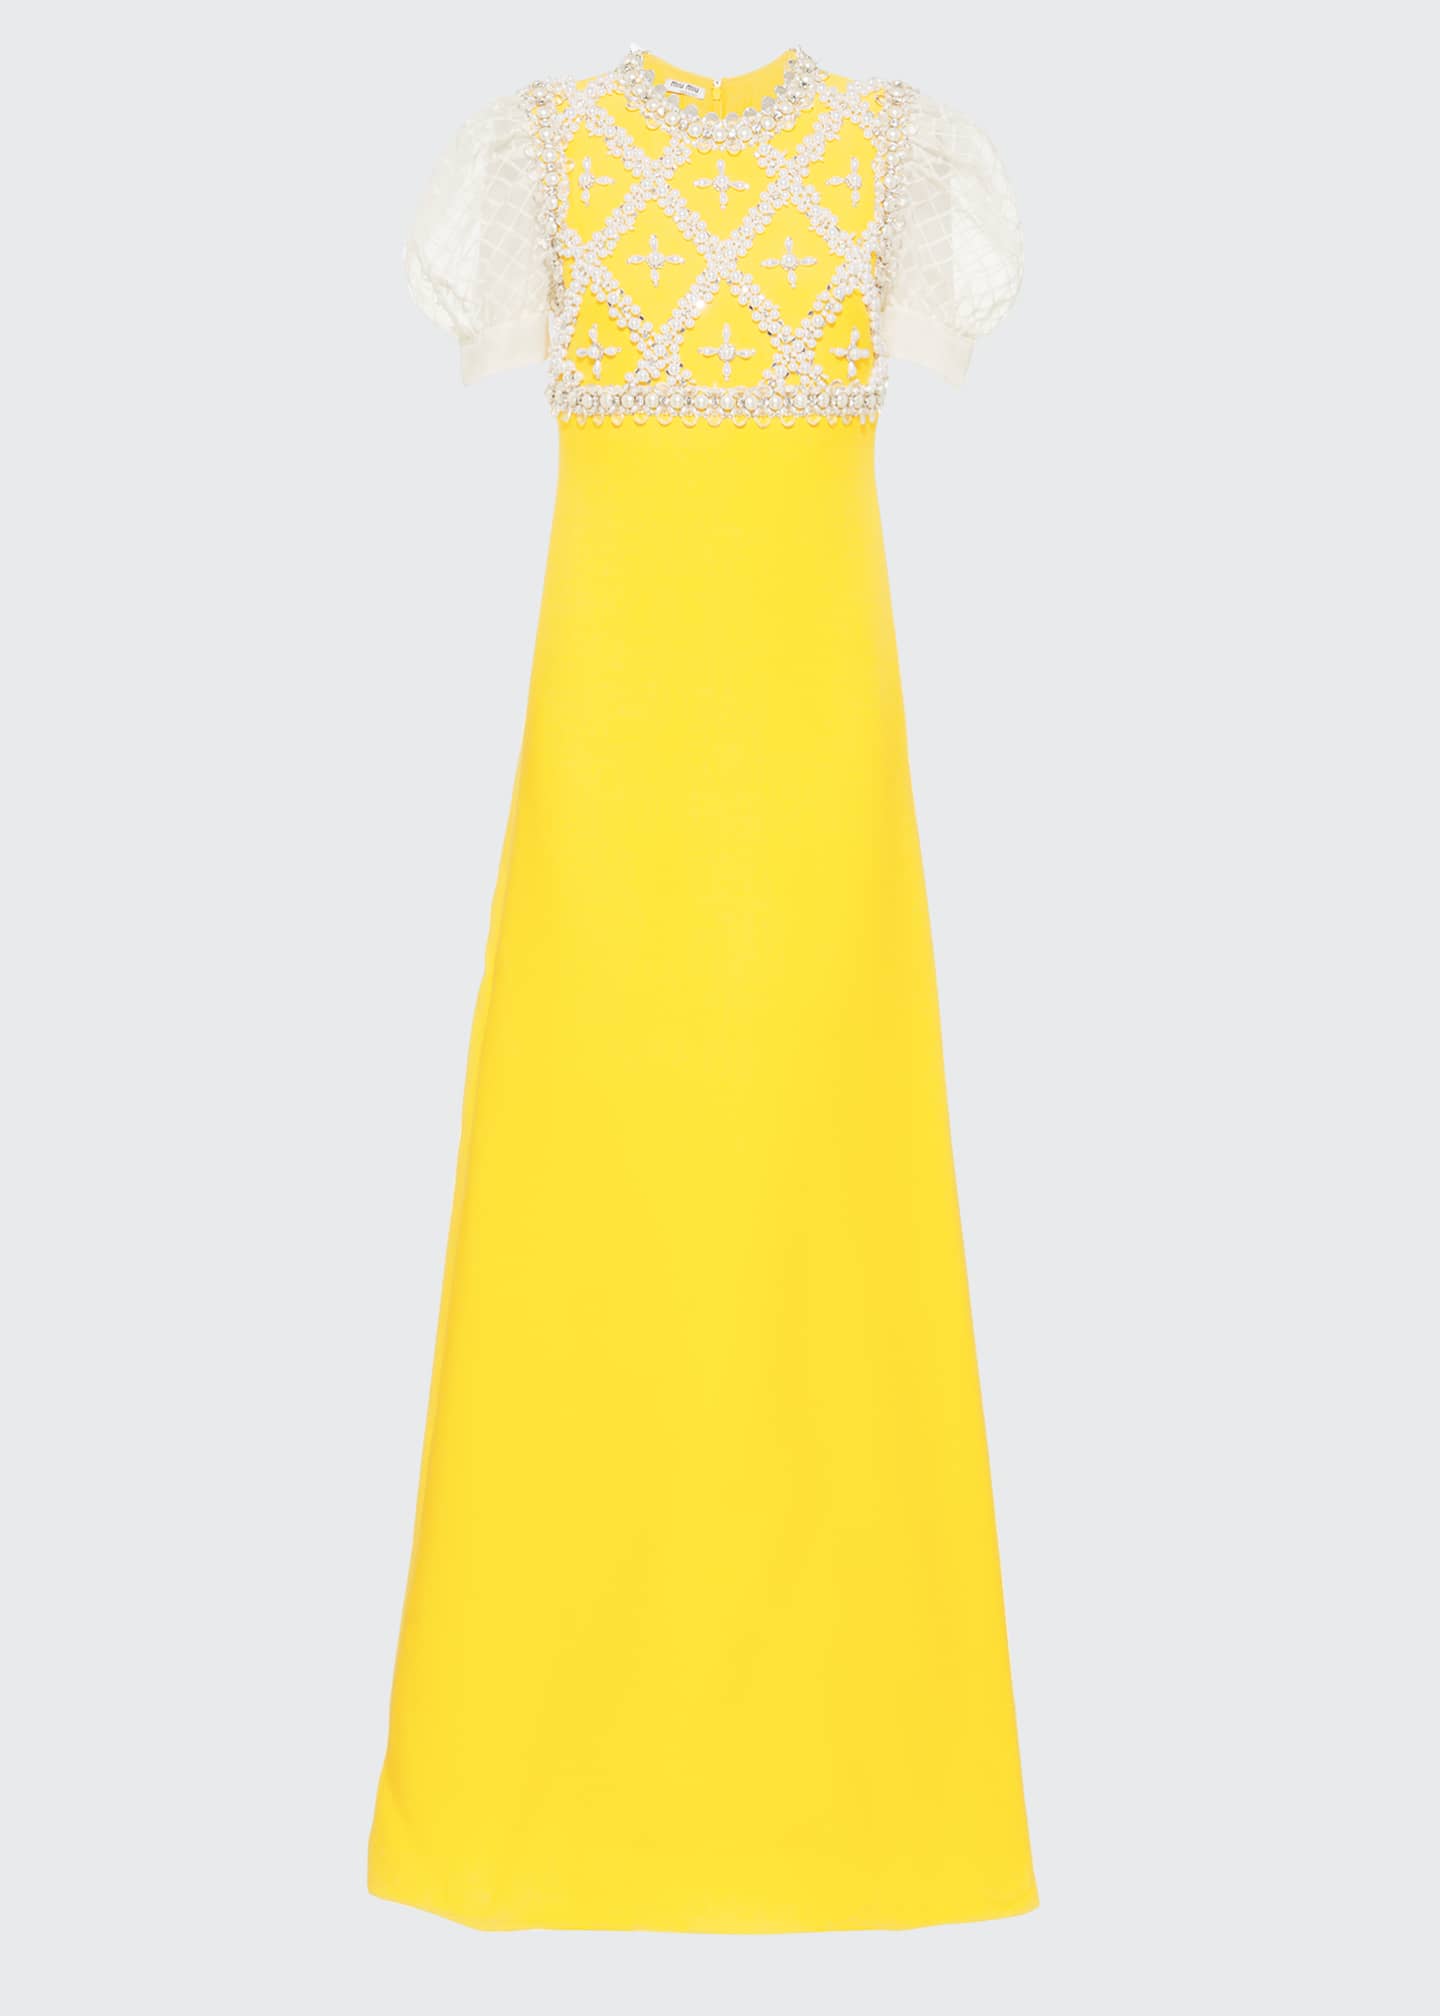 Miu Miu Long Embroidered Cady Dress - Bergdorf Goodman